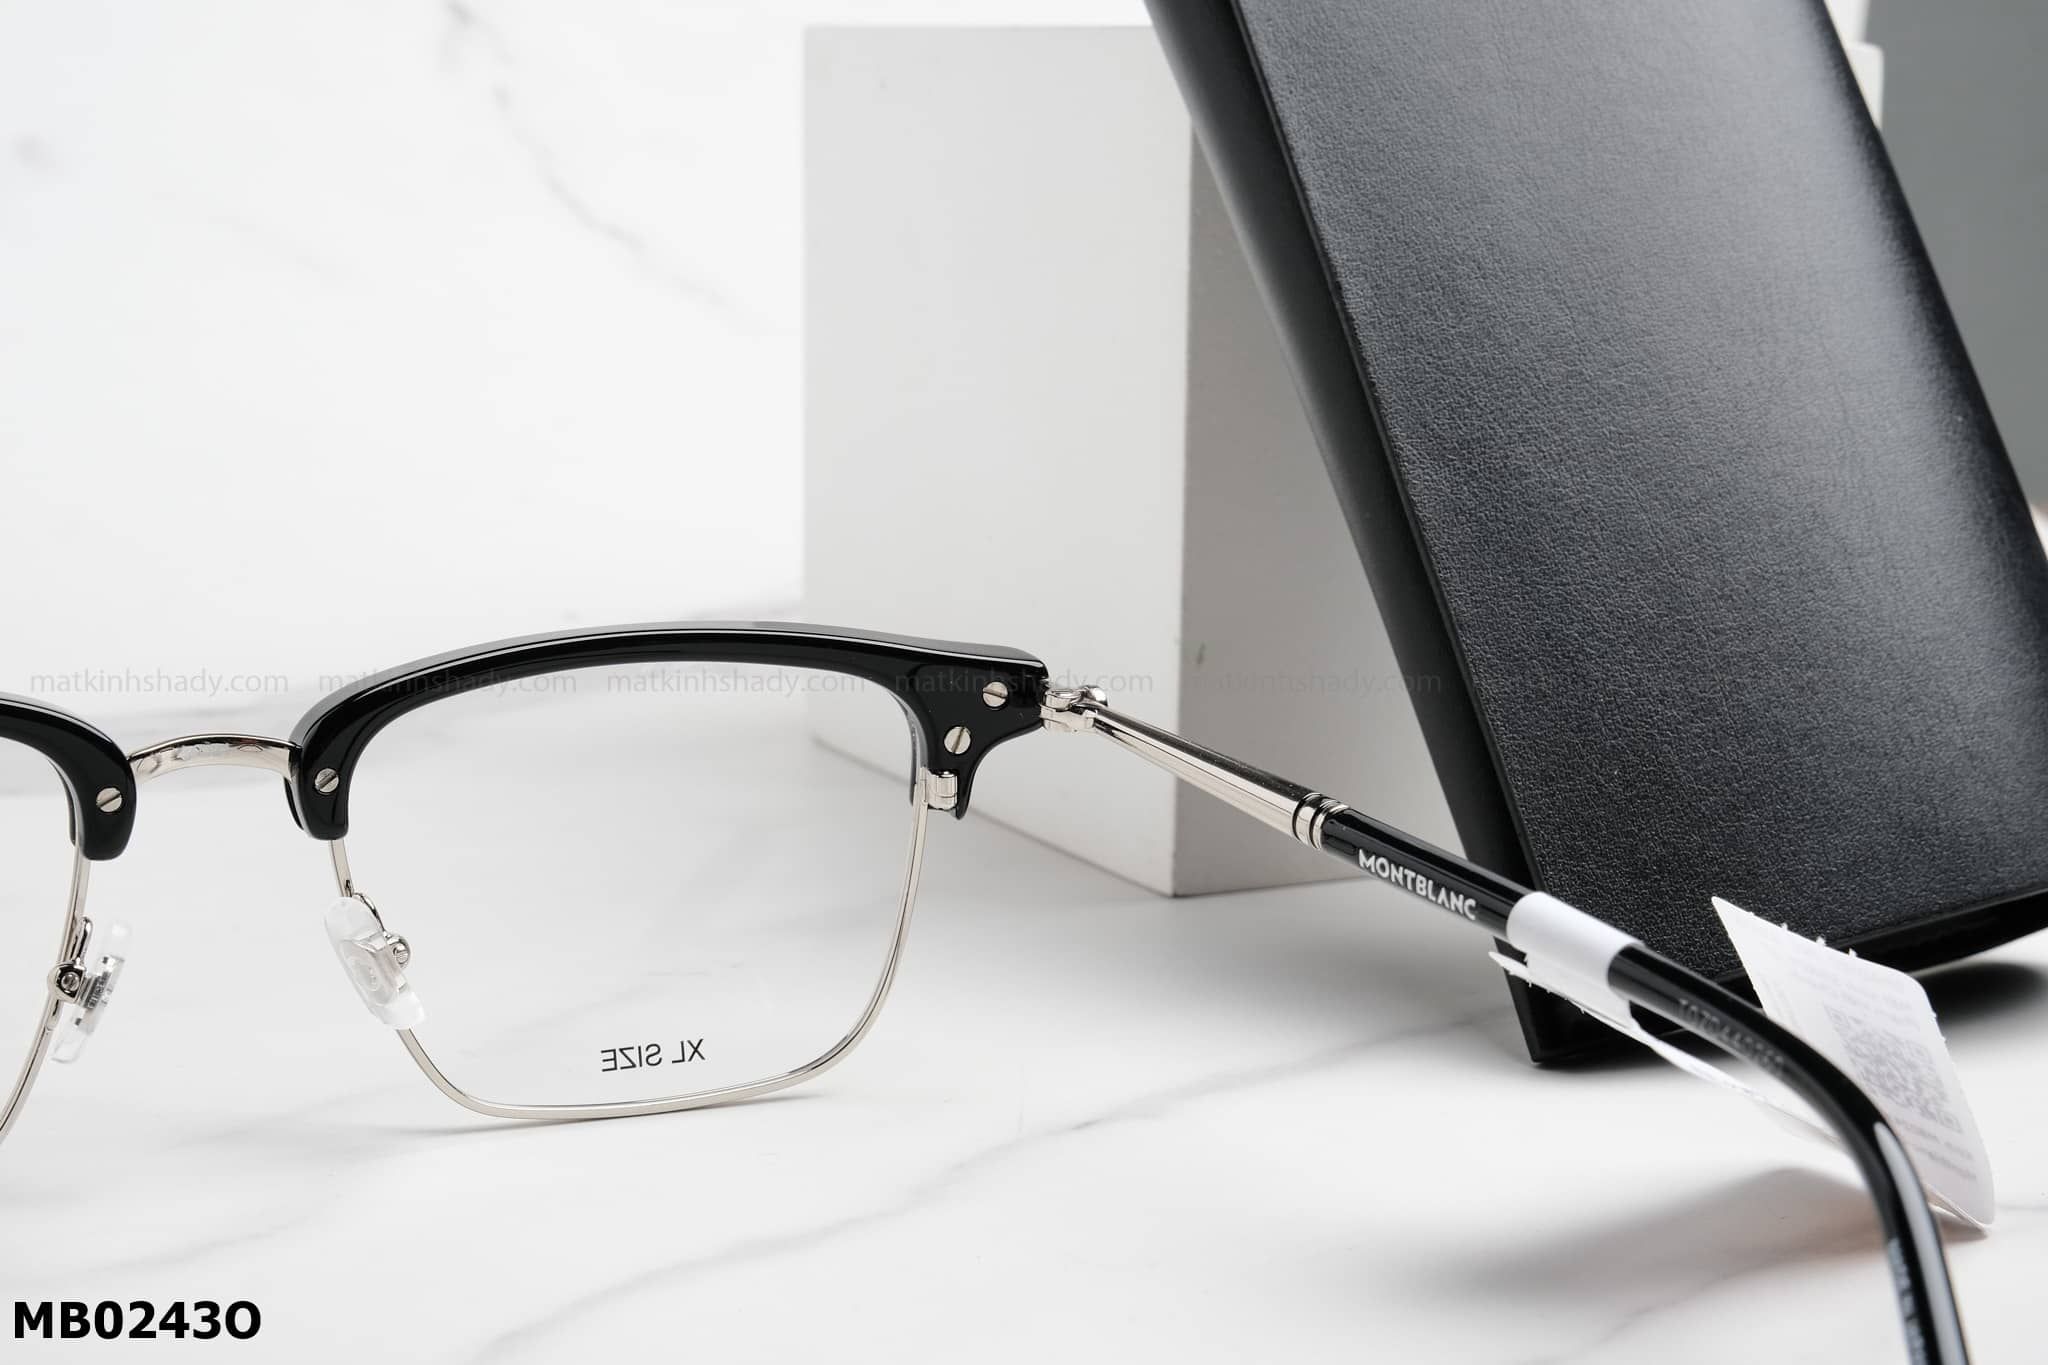  Montblanc Eyewear - Glasses - MB0243O 